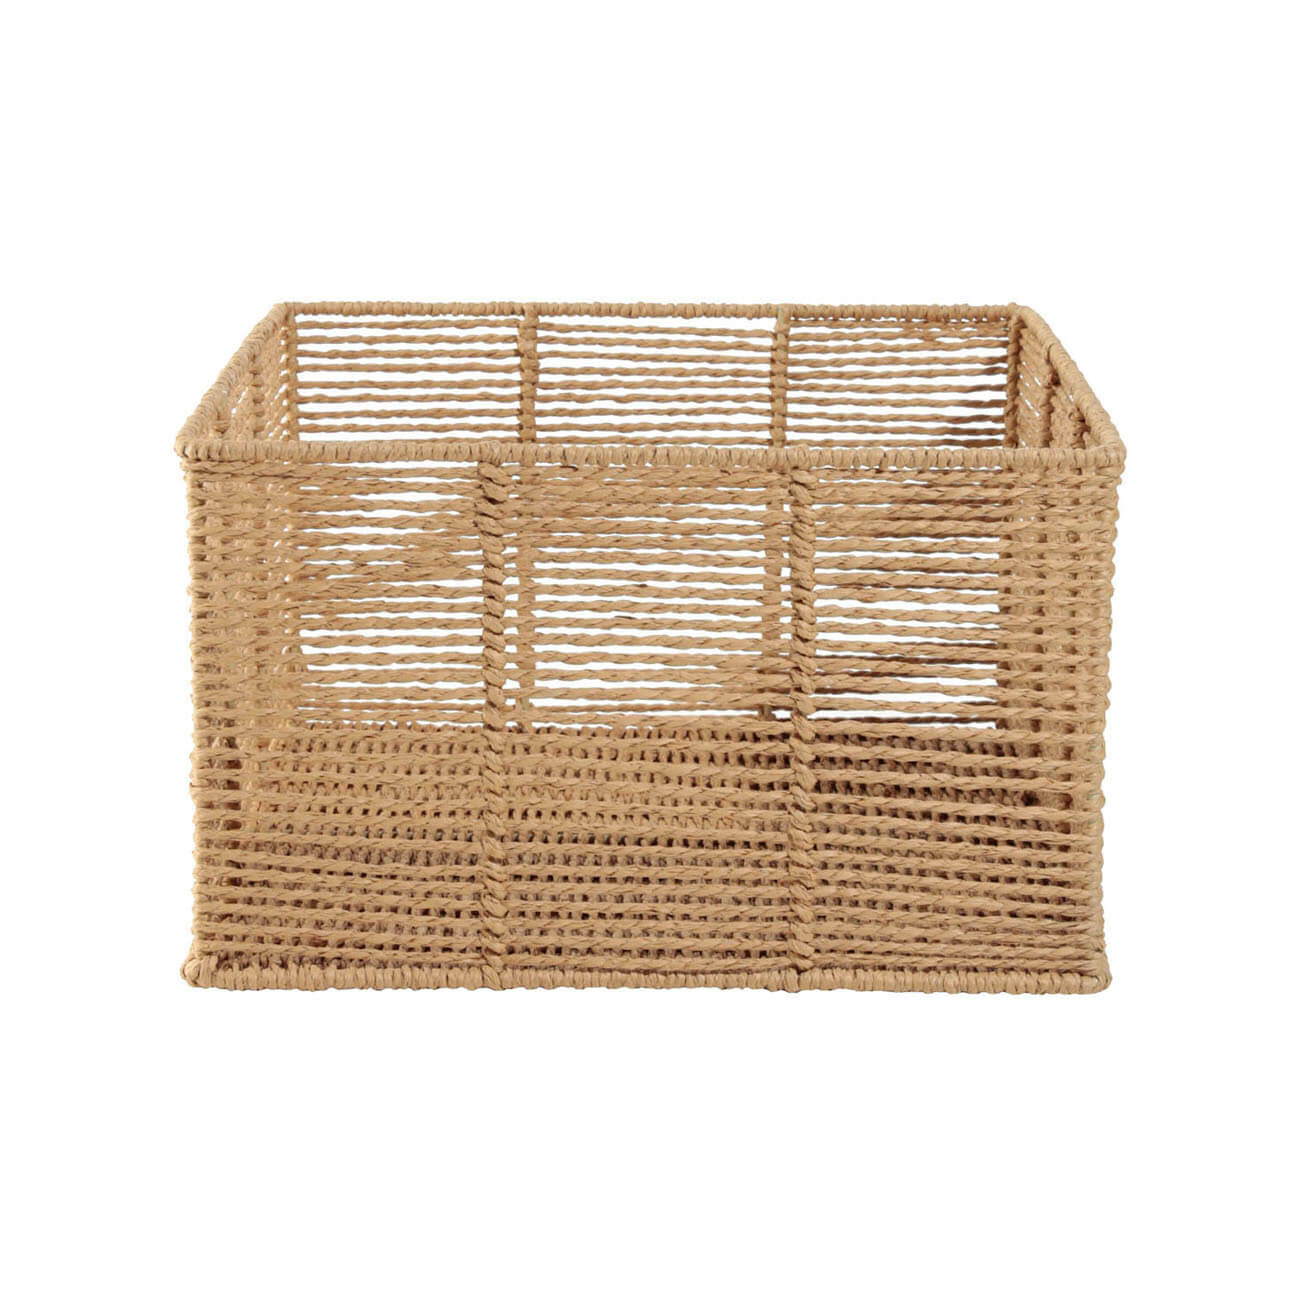 Storage basket, 20x14 cm, paper / metal, square, beige, Village изображение № 1